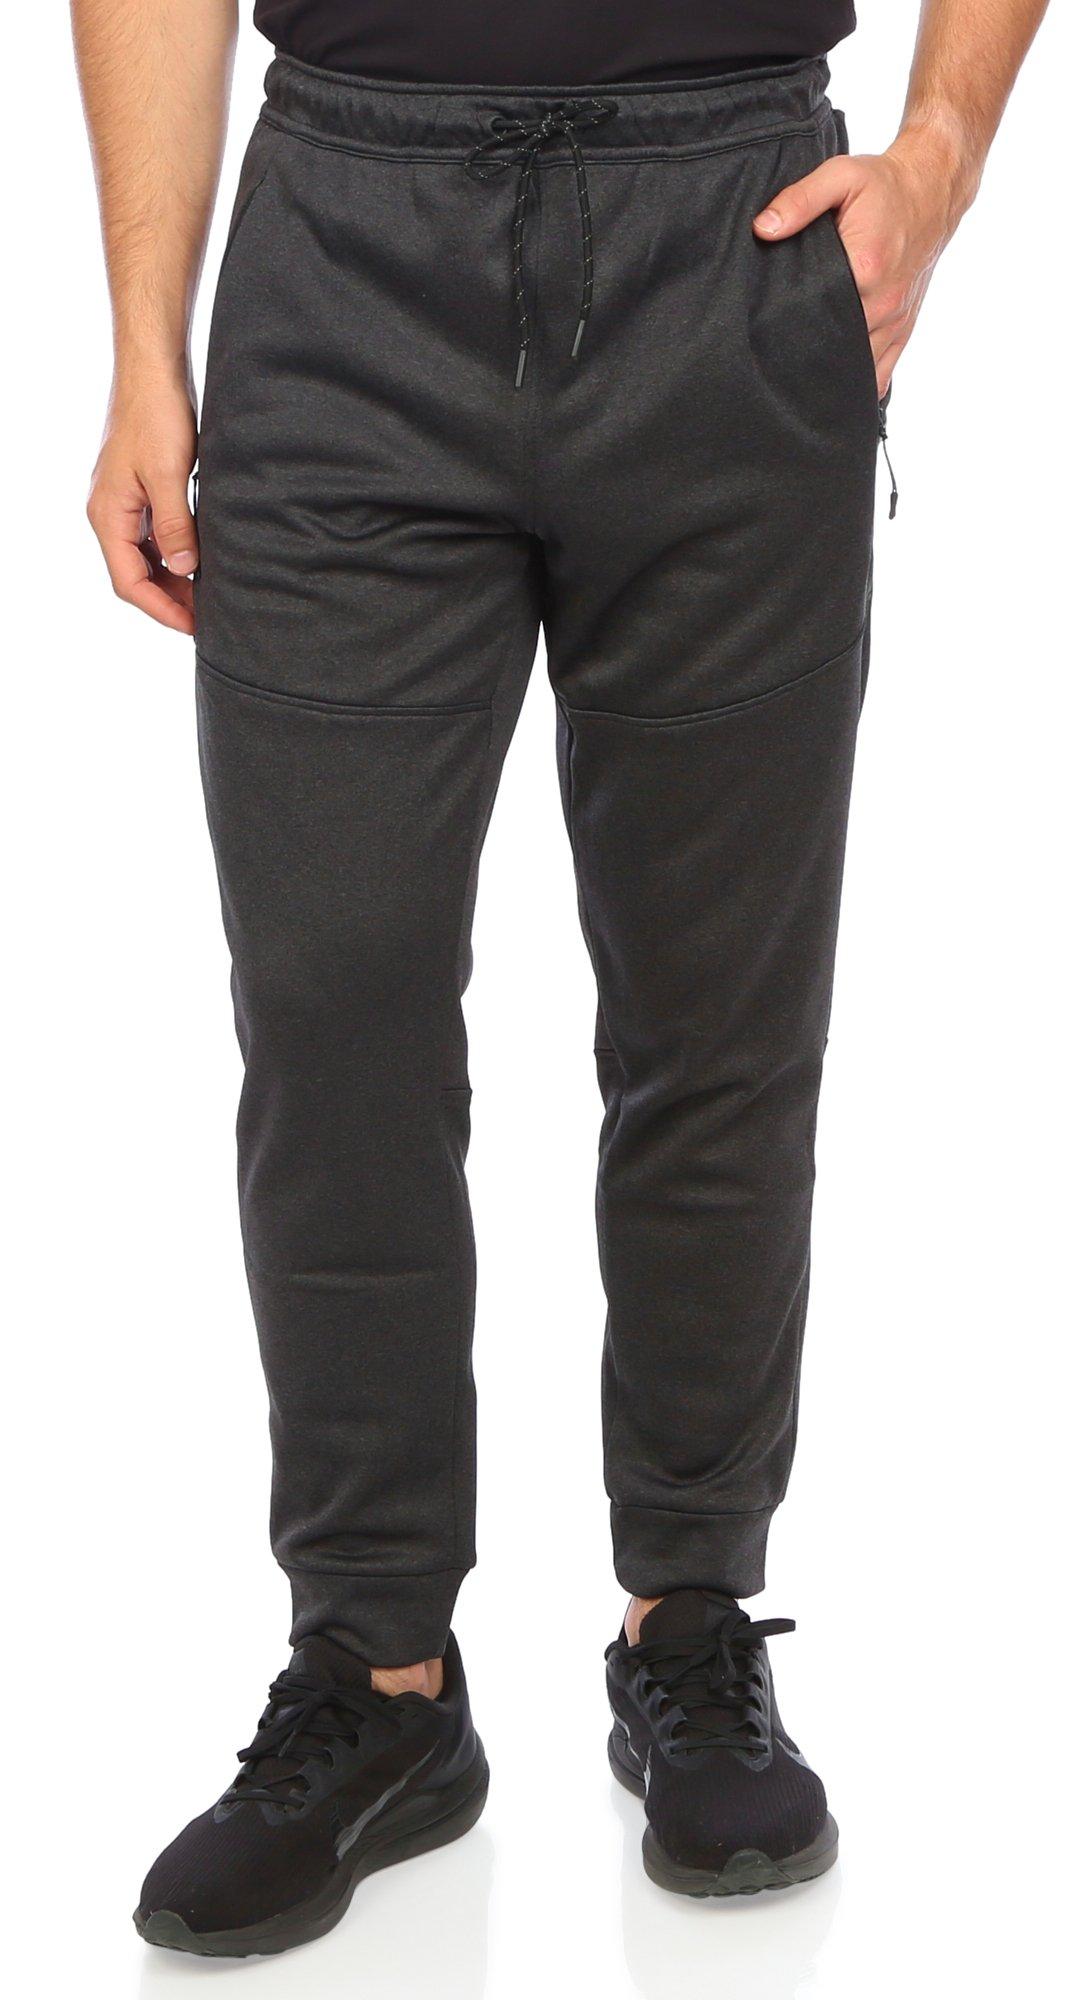 Men's Solid Comfort Sweatpants - Grey